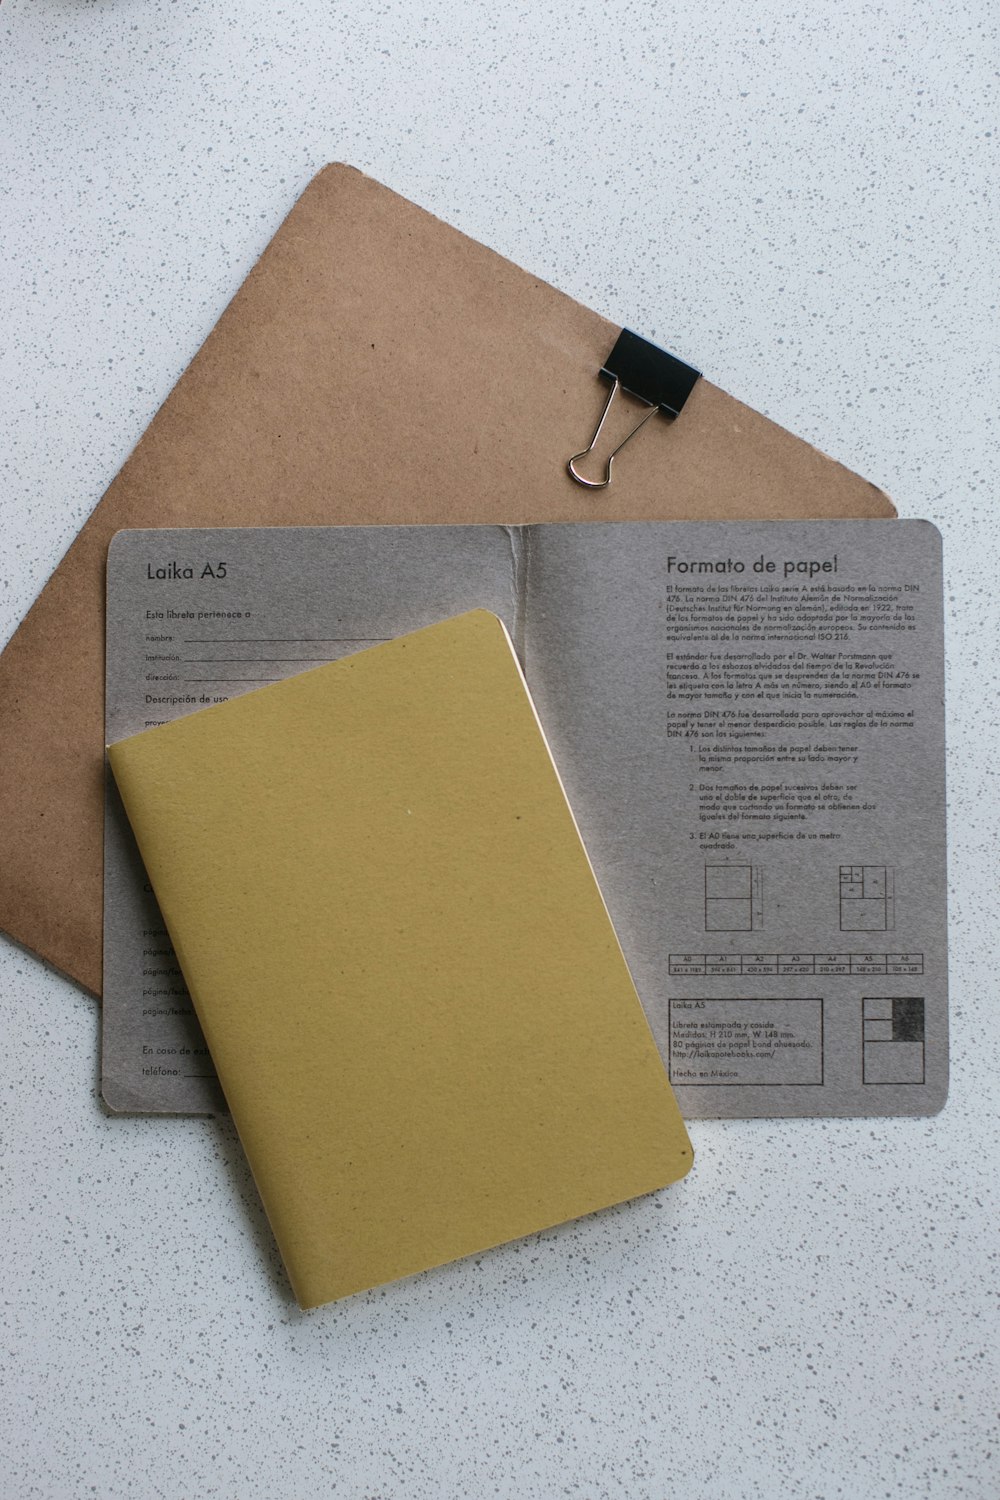 회색 프린터 용지에 노란색 소프트 바운드 책